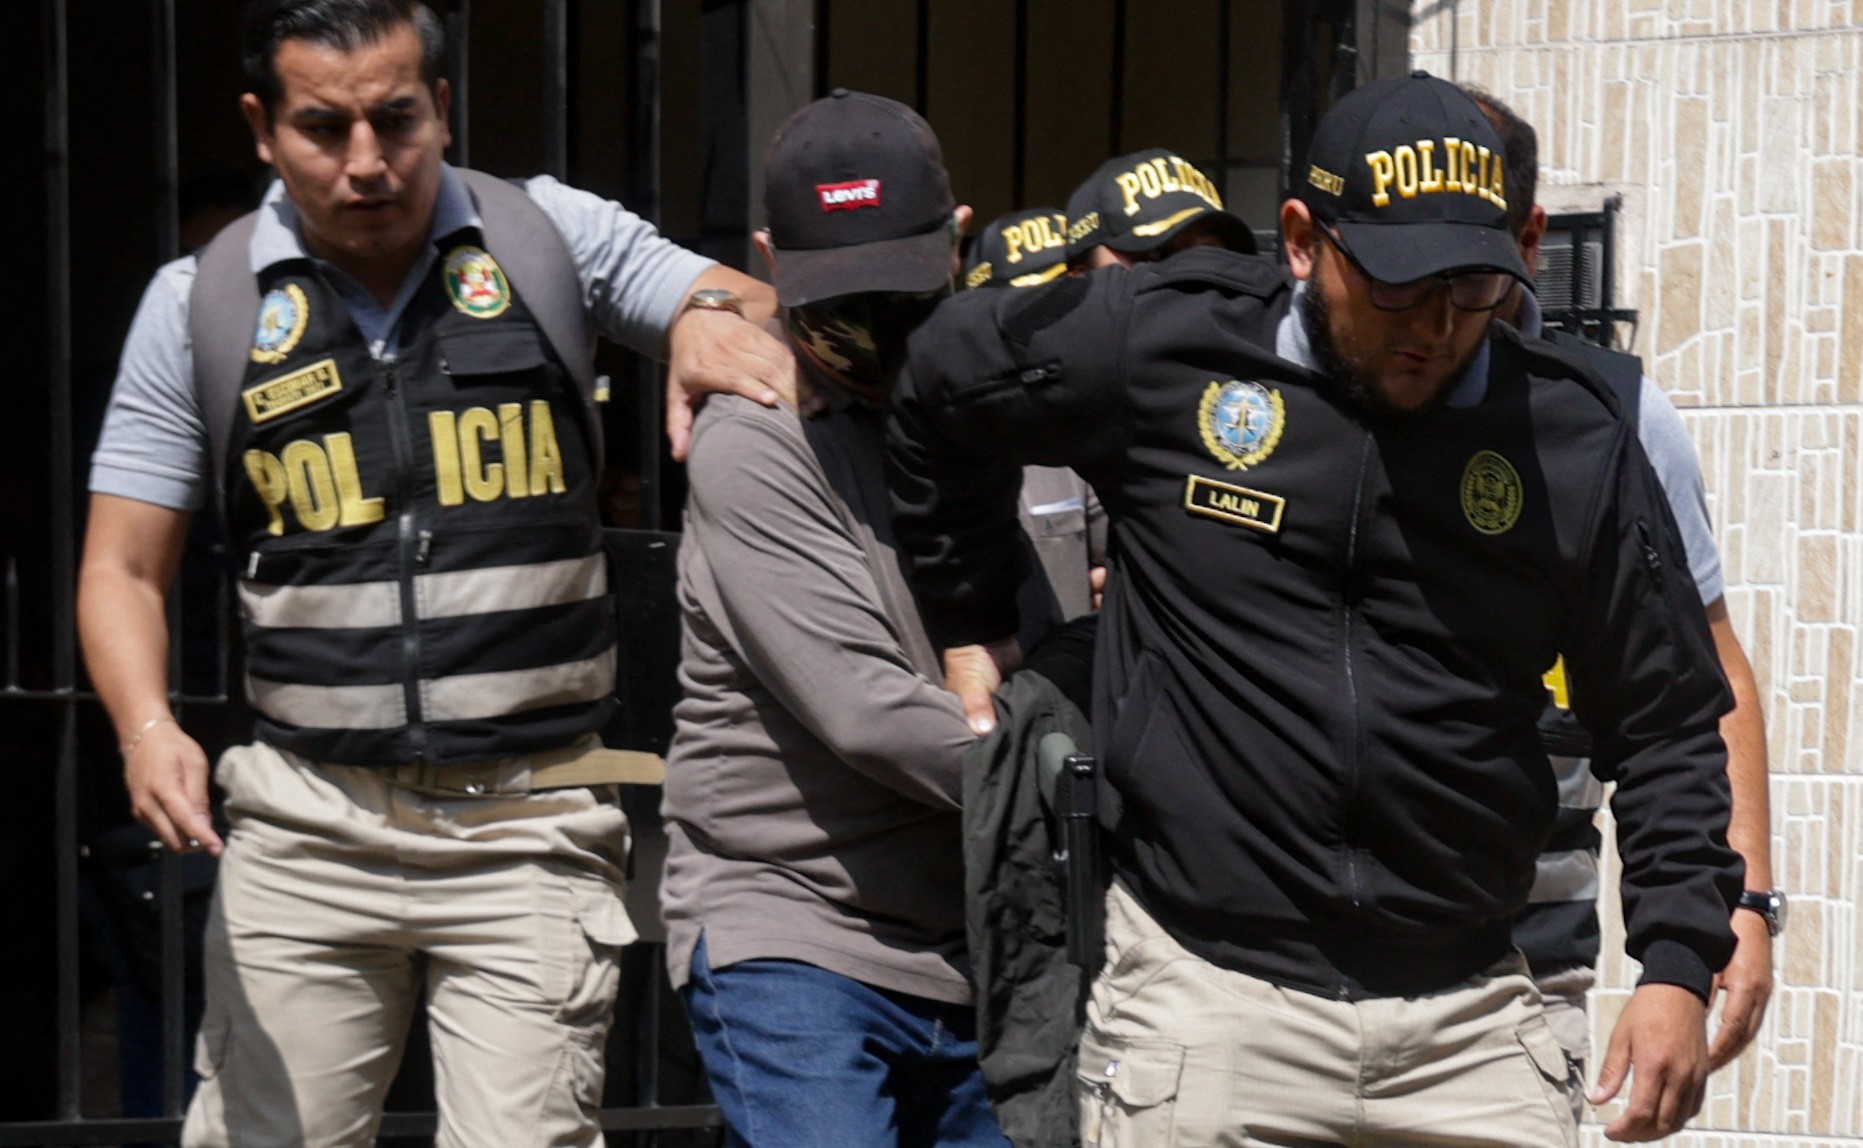 Irmão e advogado da presidente do Peru são presos por suspeita corrupção